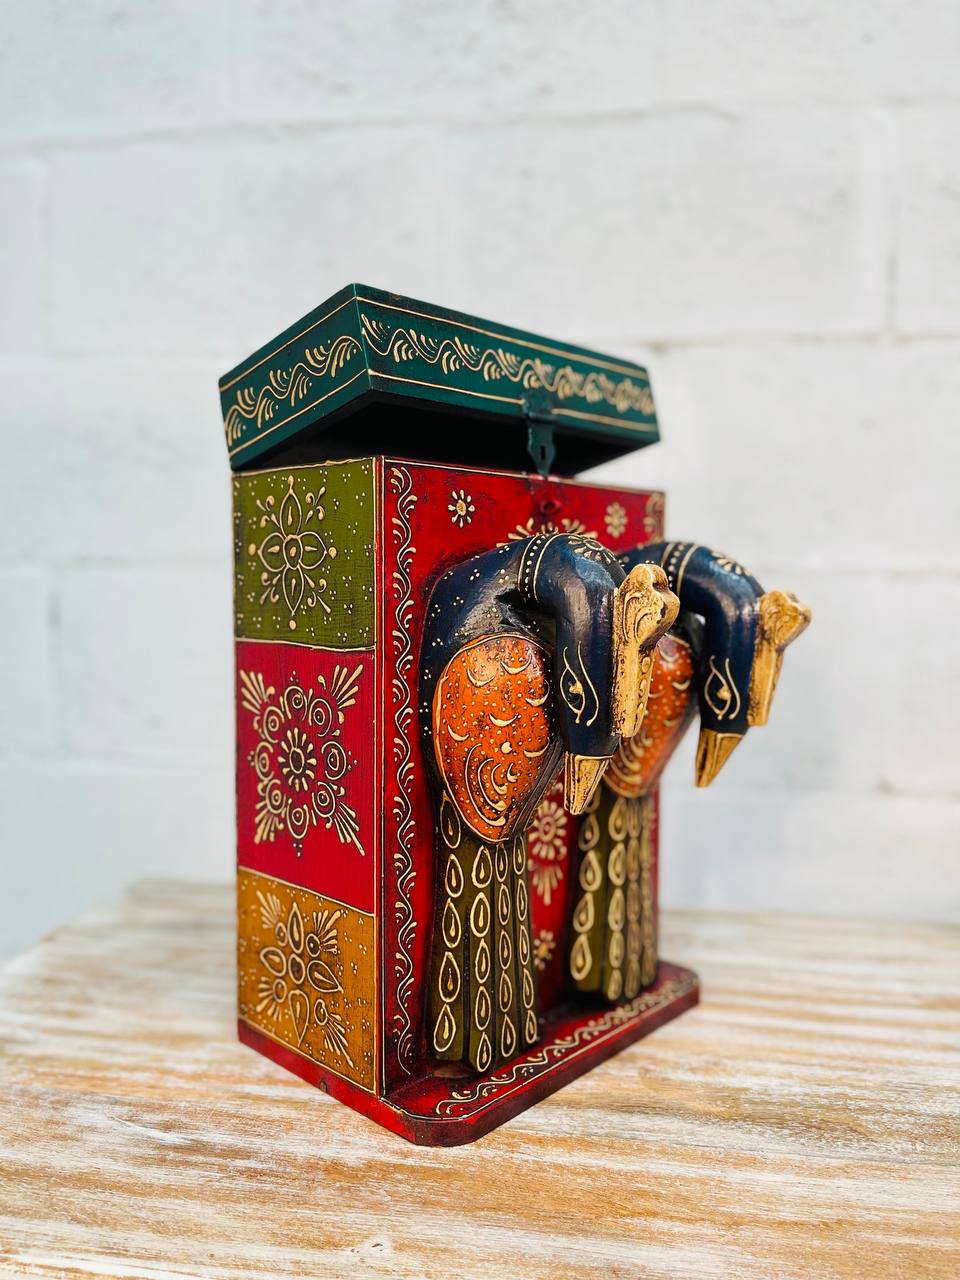 Caja Botellera "Doble Elegancia" - Madera Tallada, Pintada a Mano con Diseños, Doble Compartimento y Cabeza de Pavo